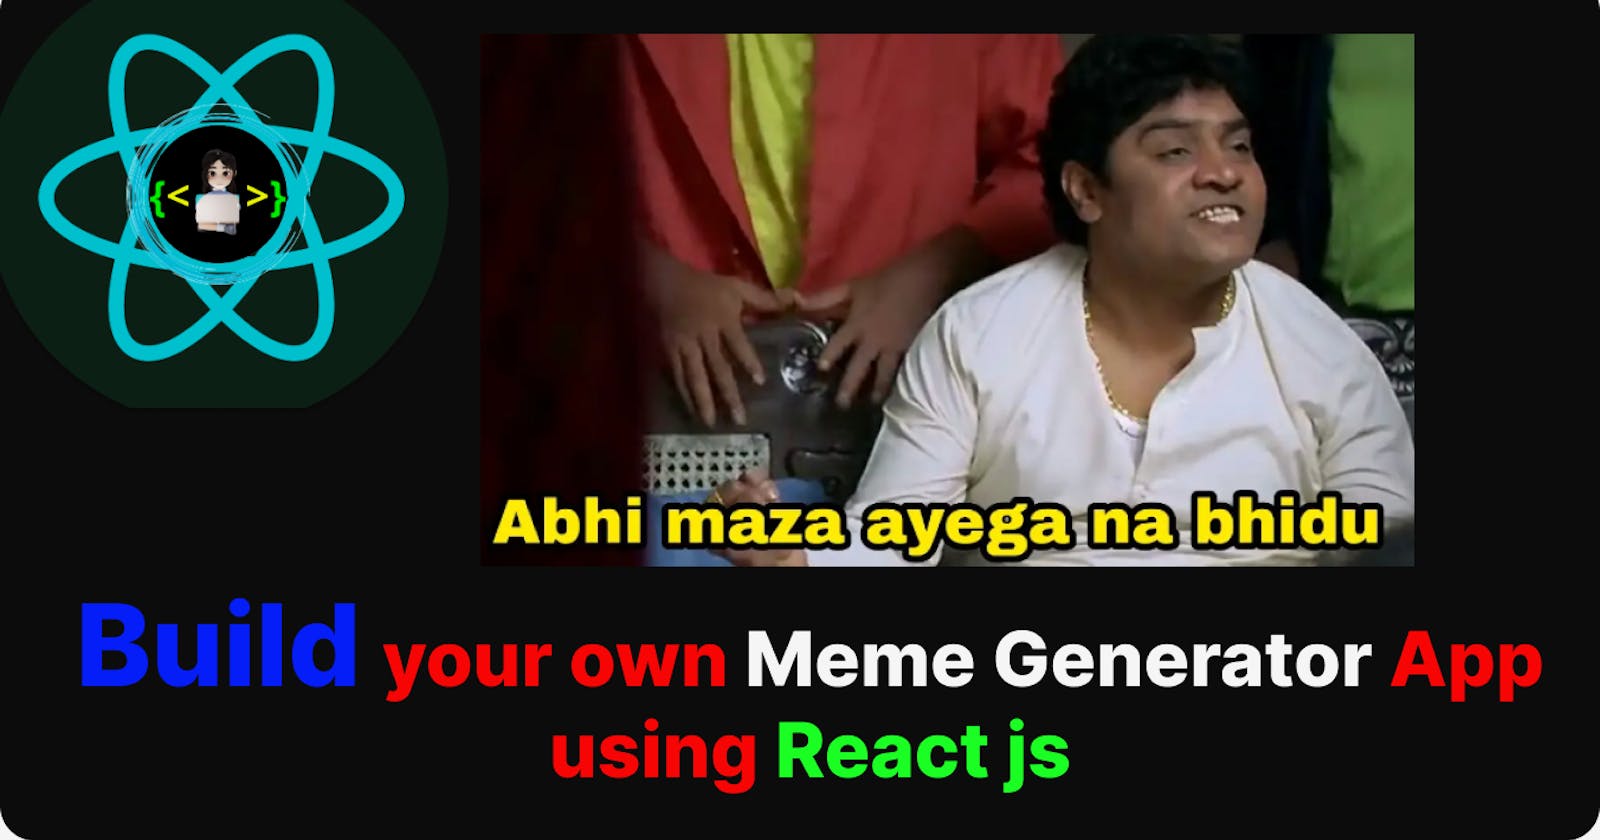 🟠Meme Generator App - Build your own memes using React Meme Generator